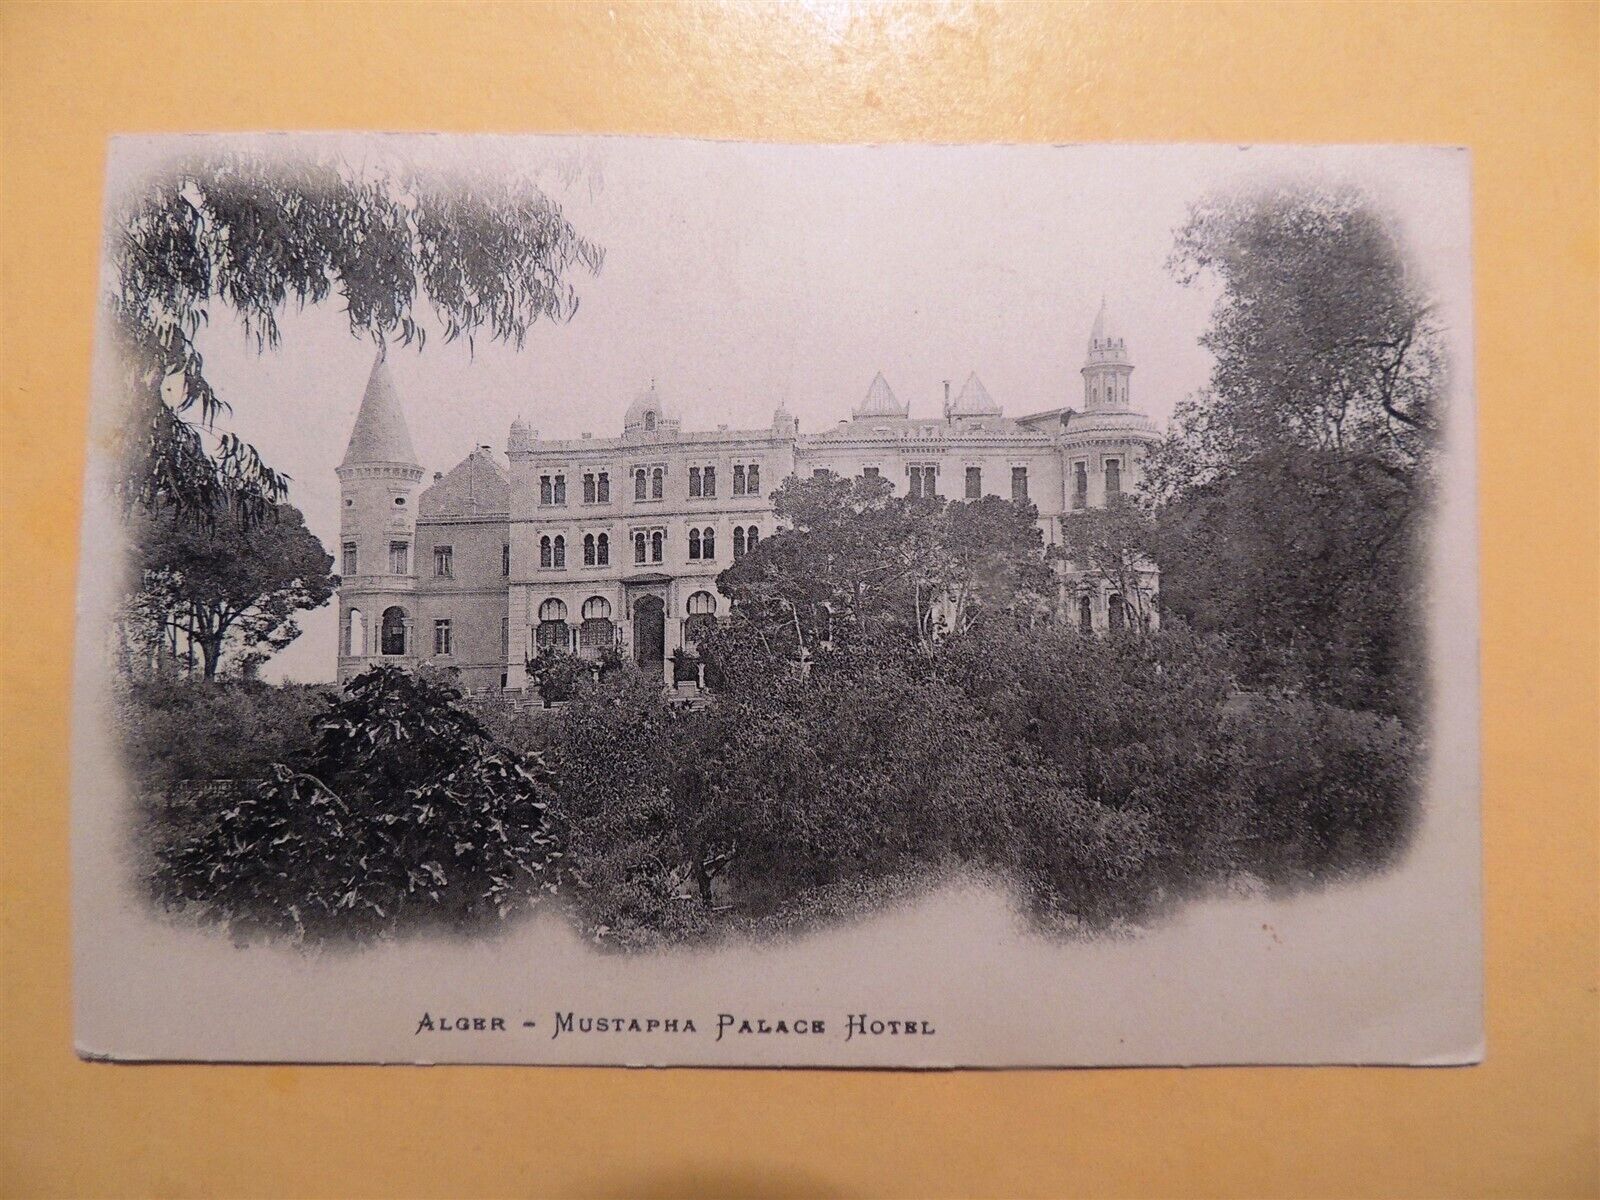 Mustapha Palace Hotel Algiers Algeria vintage postcard 